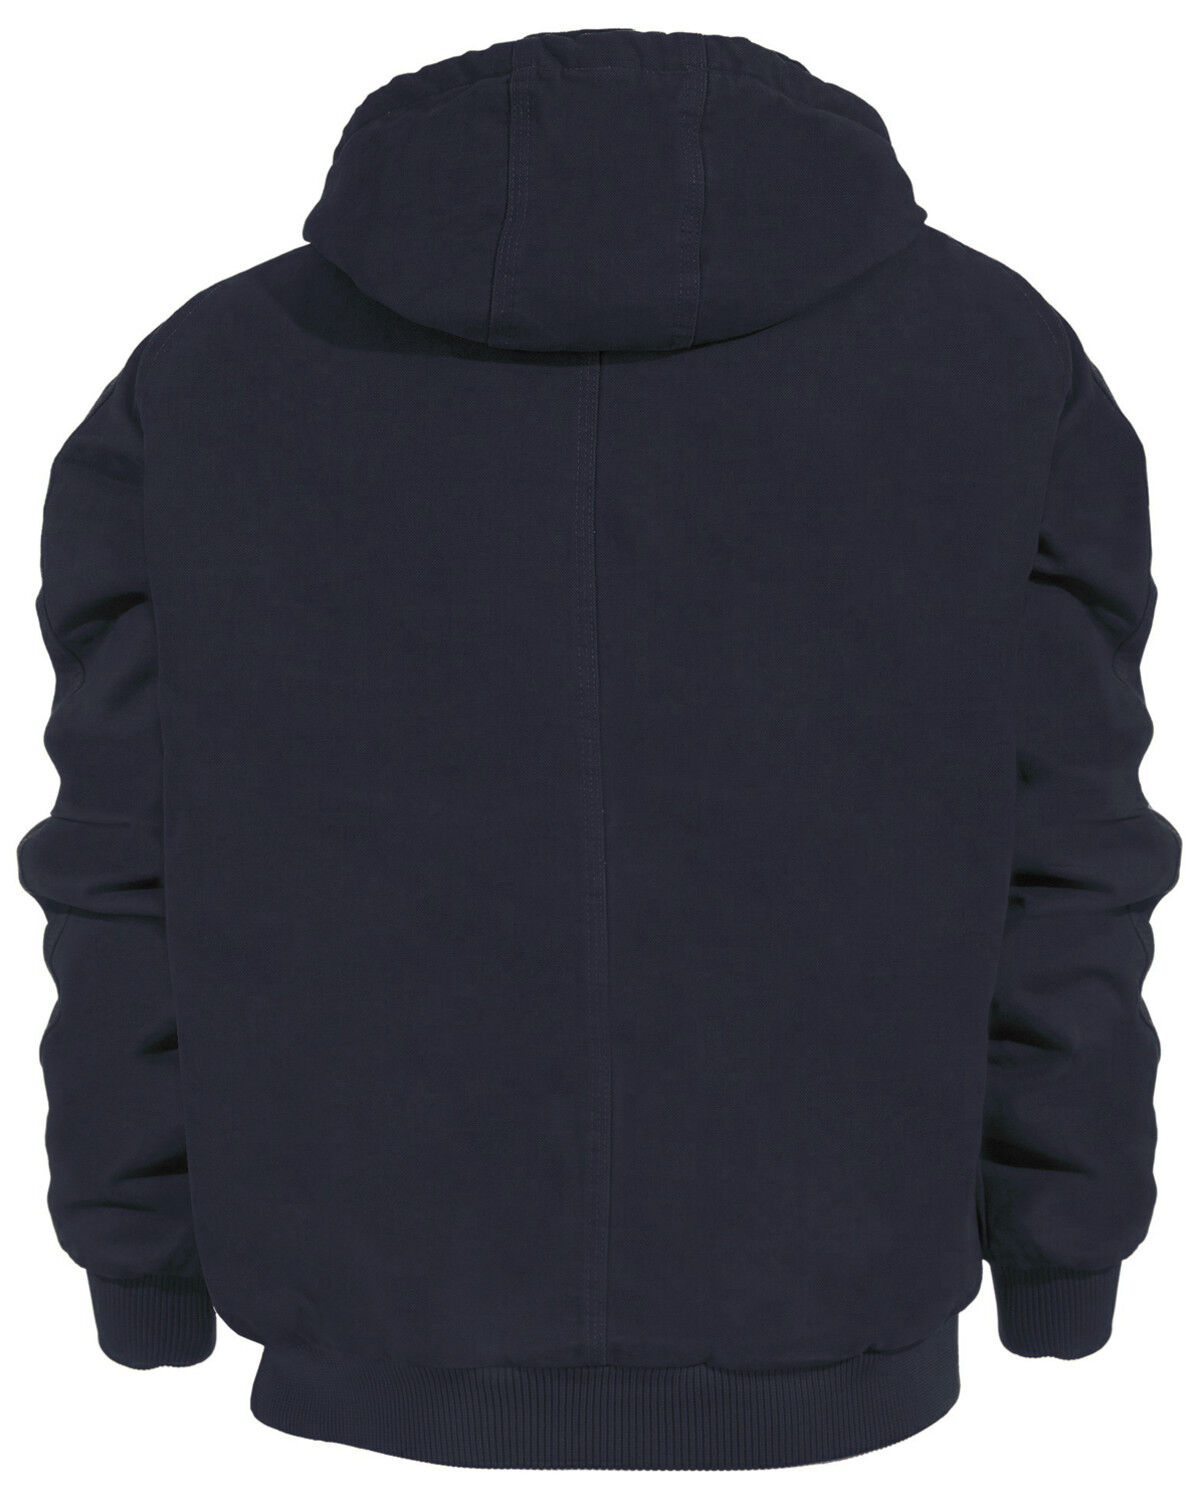 Berne Original Washed Hooded Jacket Quilt Lined New 